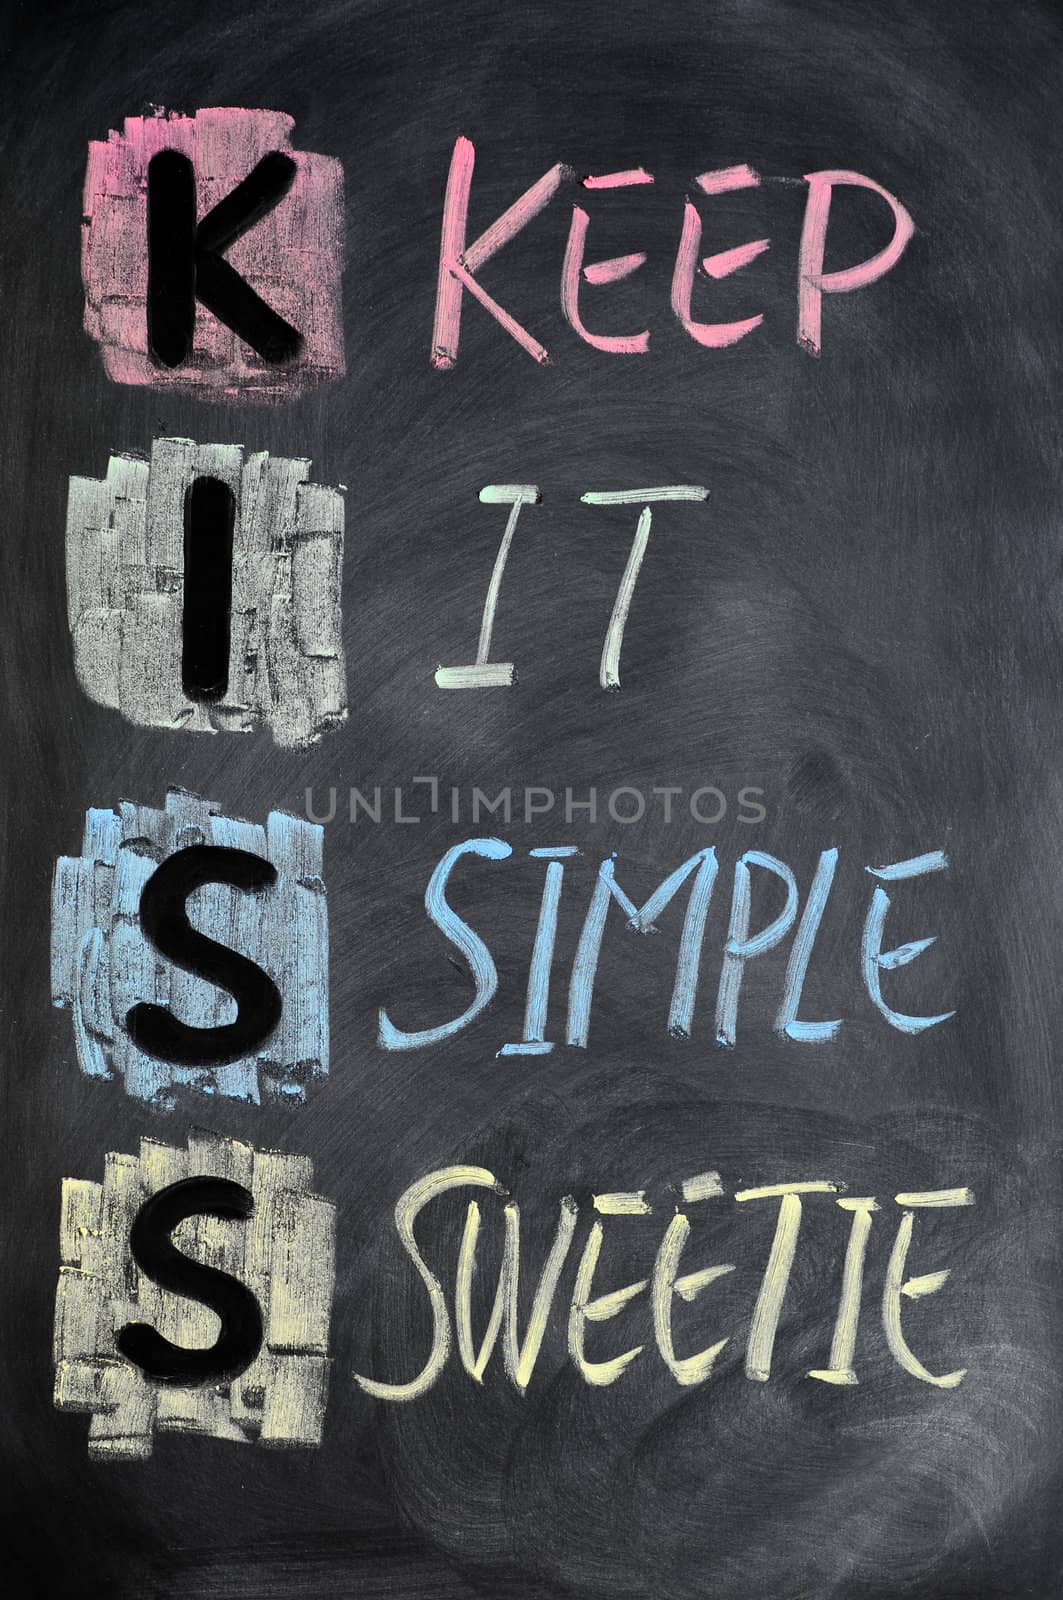 KISS acronym by bbbar